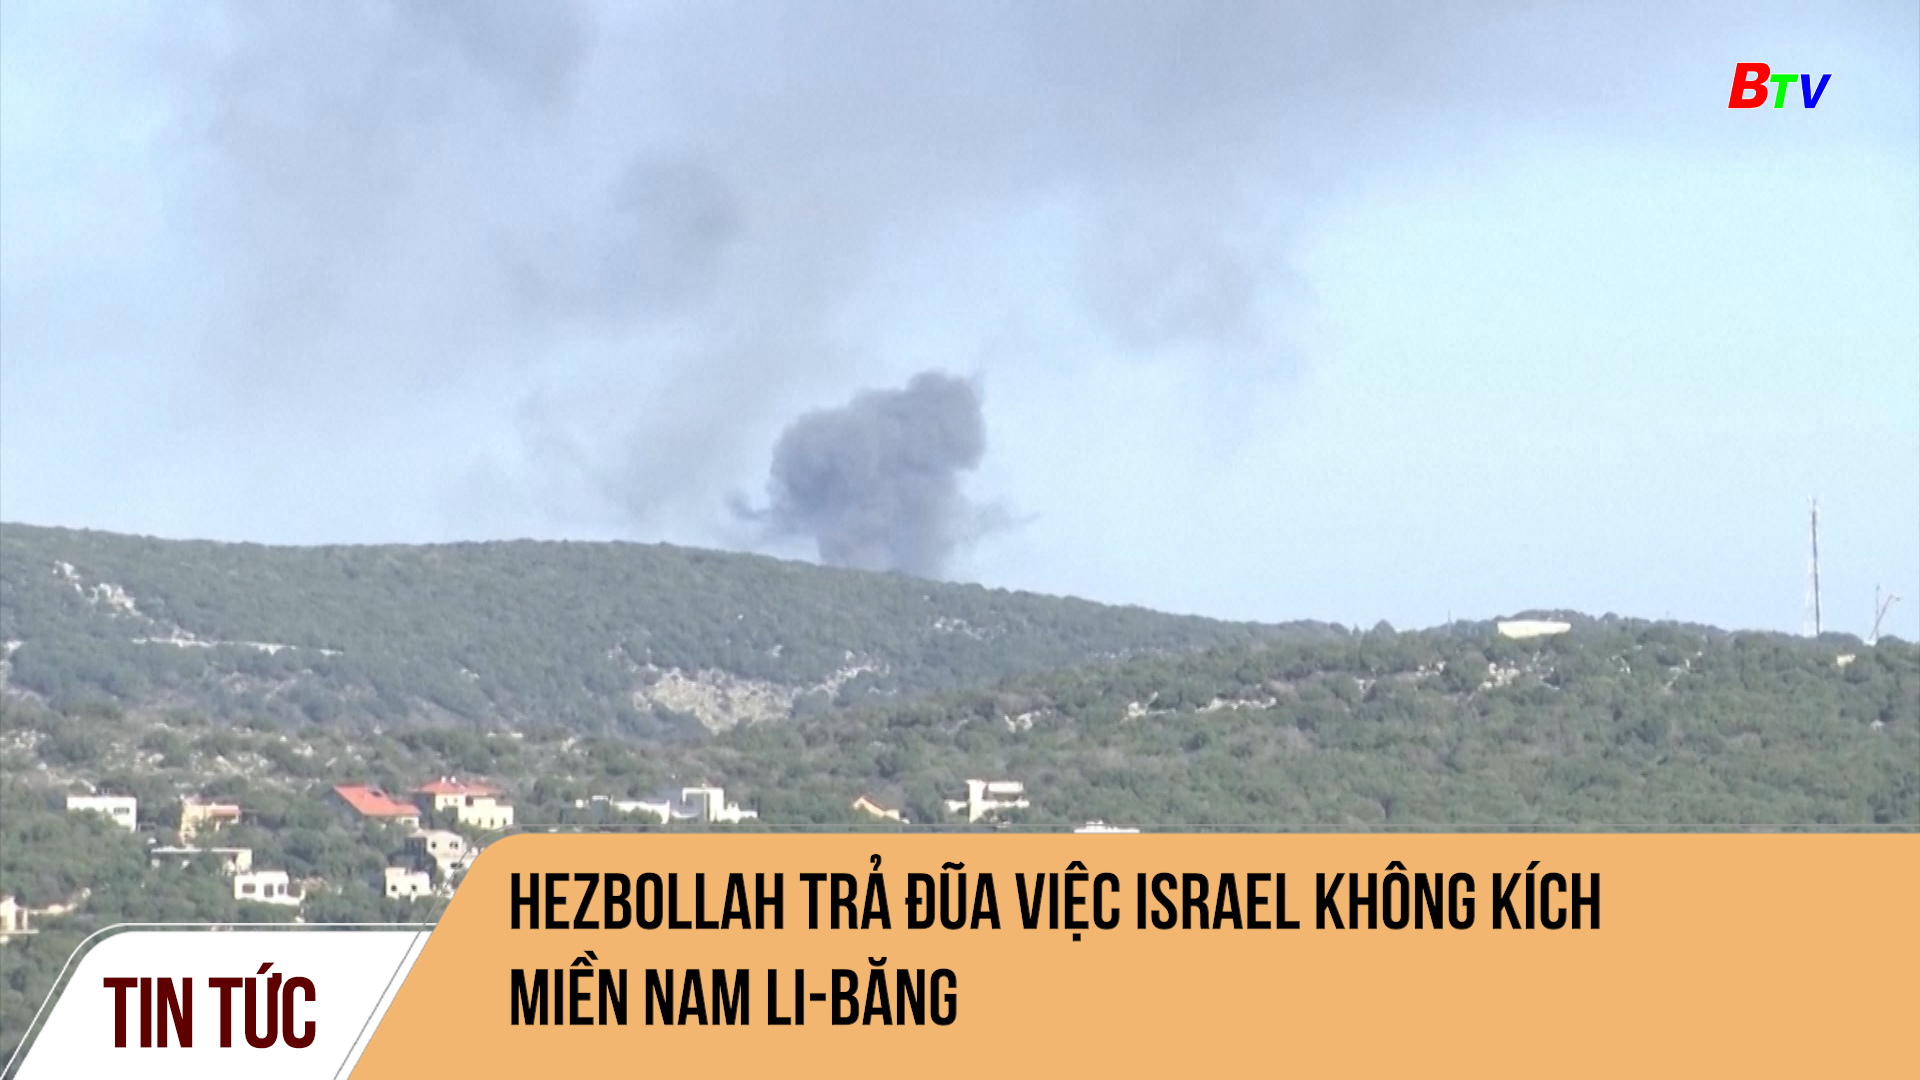 Hezbollah trả đũa việc Israel không kích miền Nam Li-băng